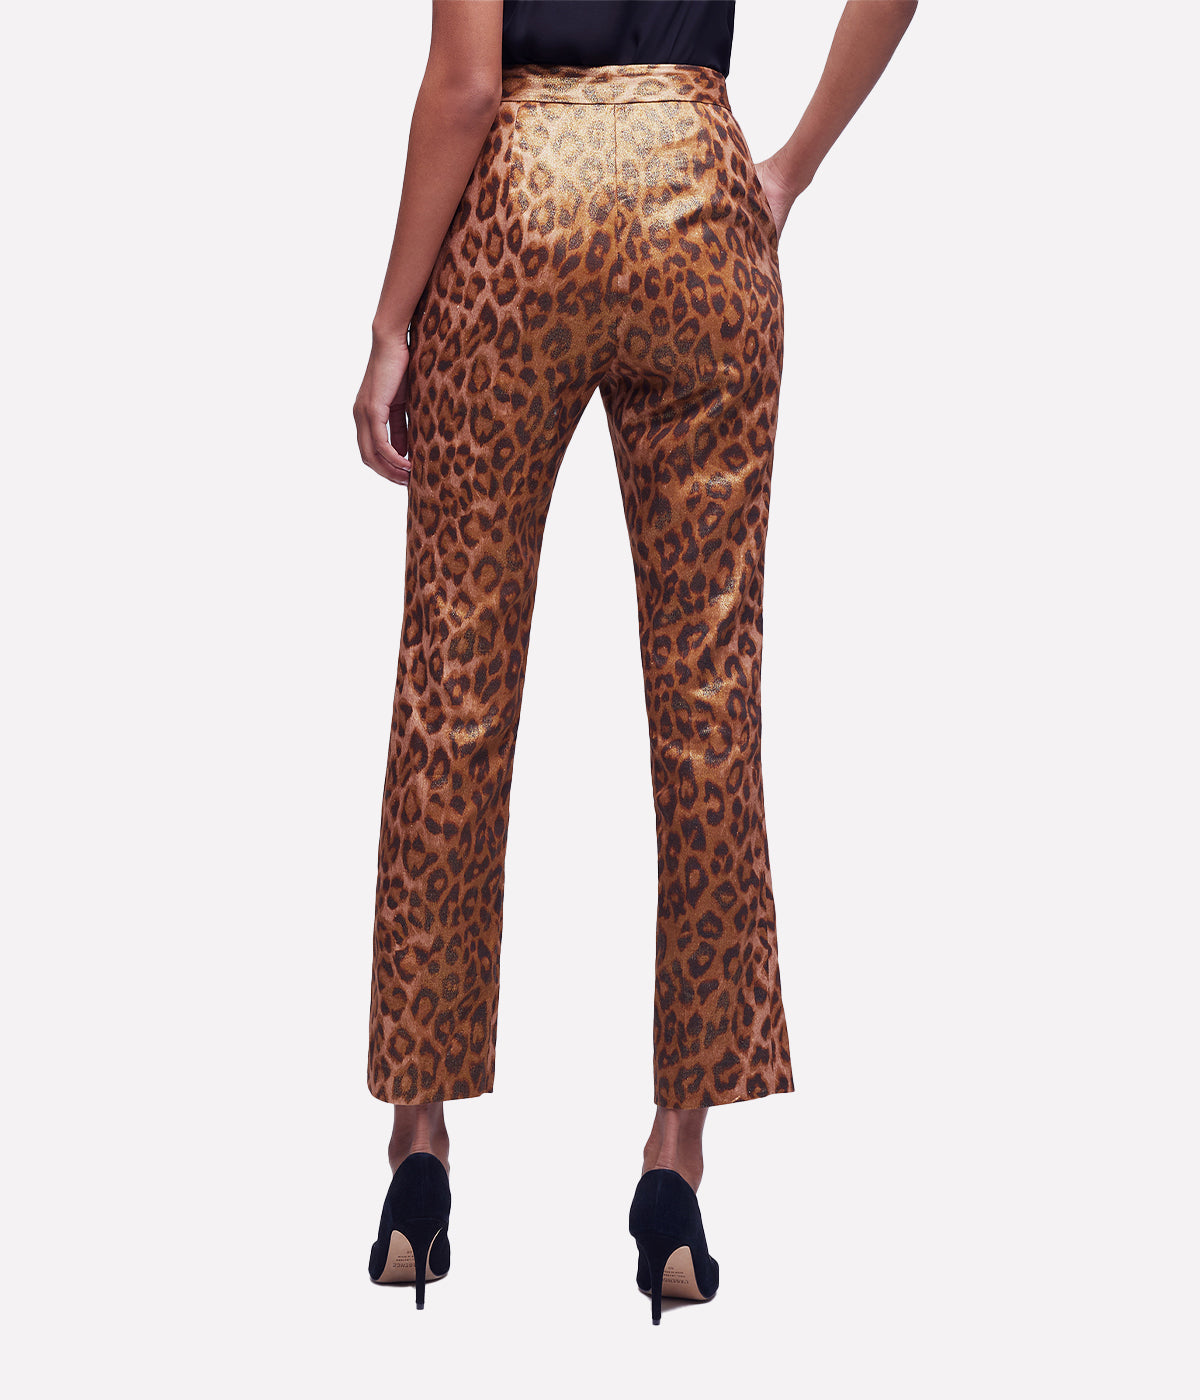 Rebel Trouser in Gold Multi & Cheetah